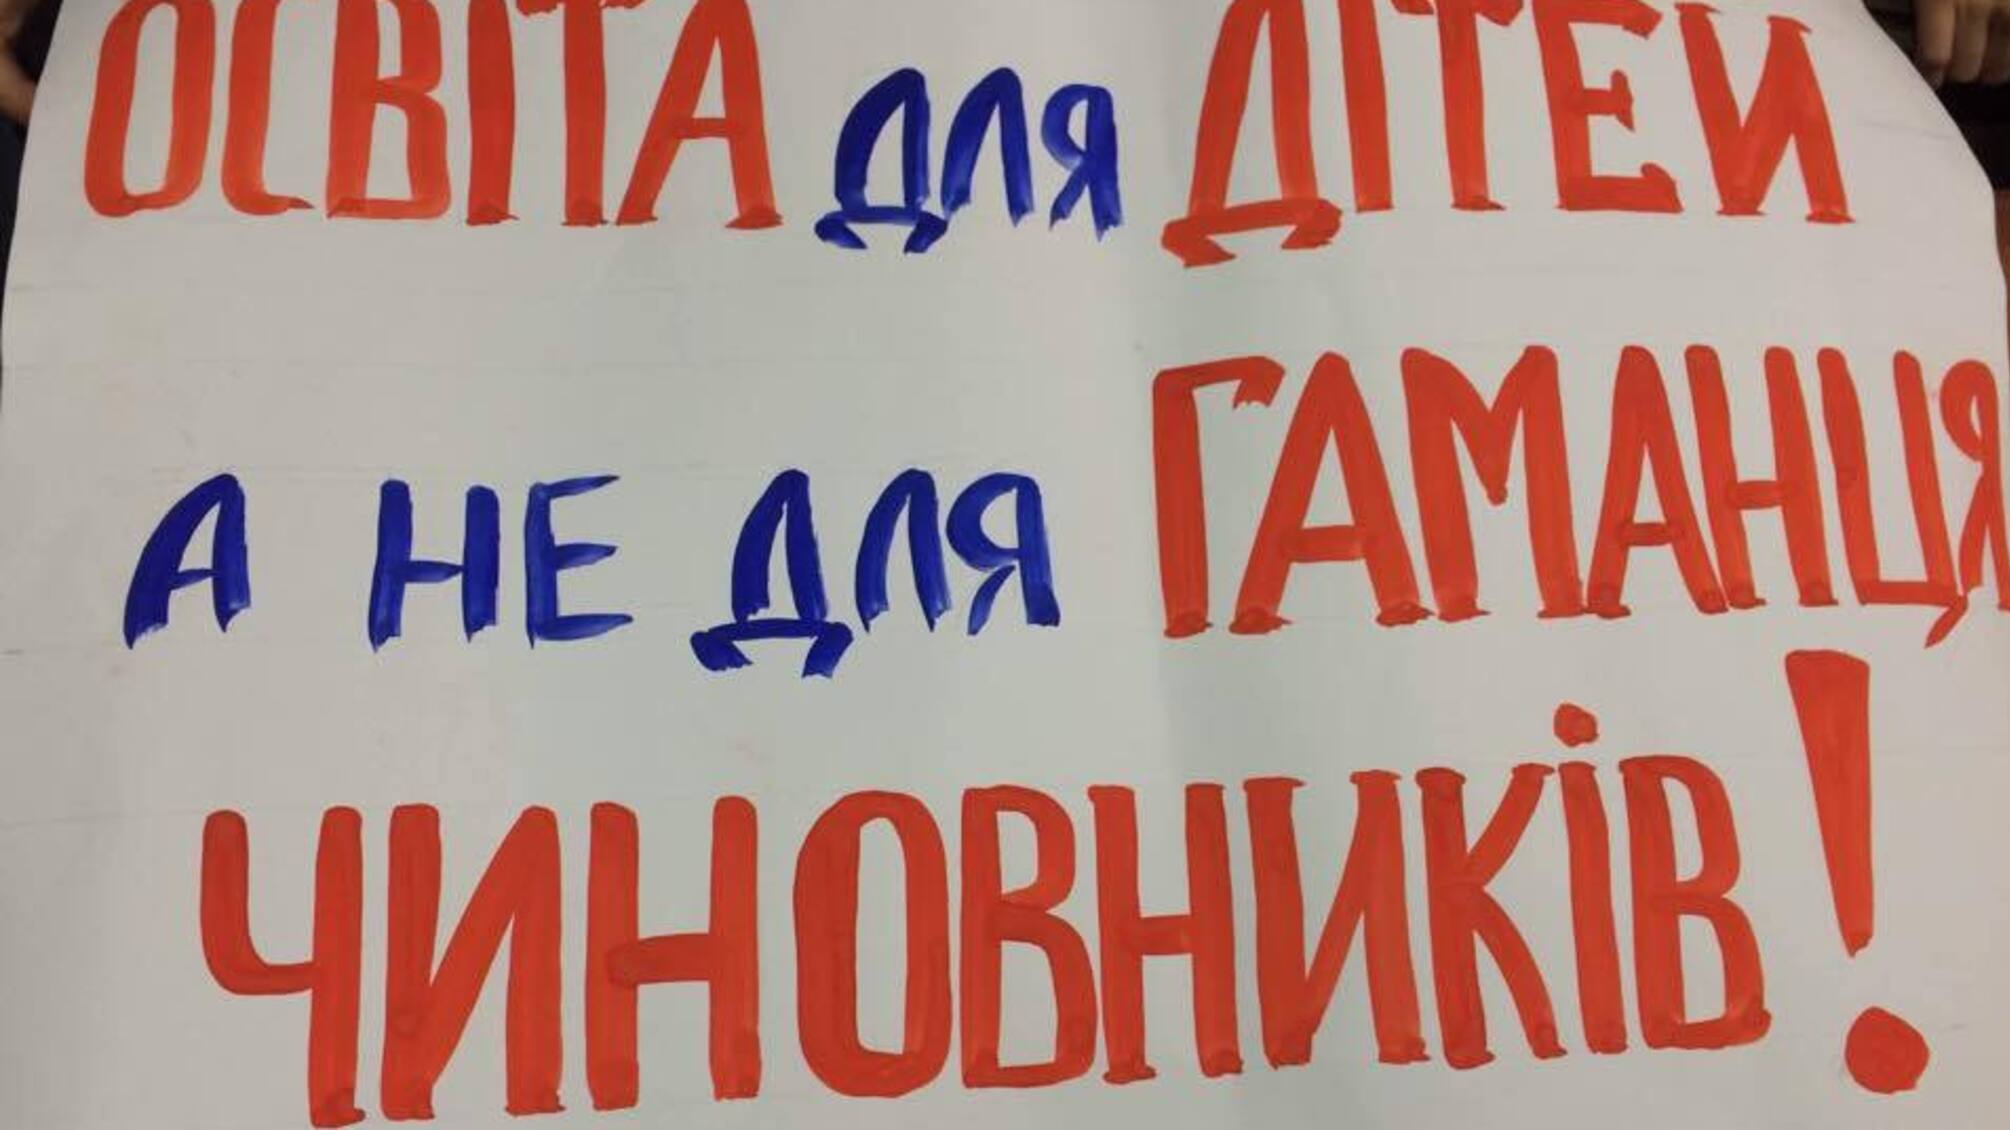 Активісти спонукали голову Дніпровської РДА переглянути рішення щодо реорганізації двох шкіл у районі